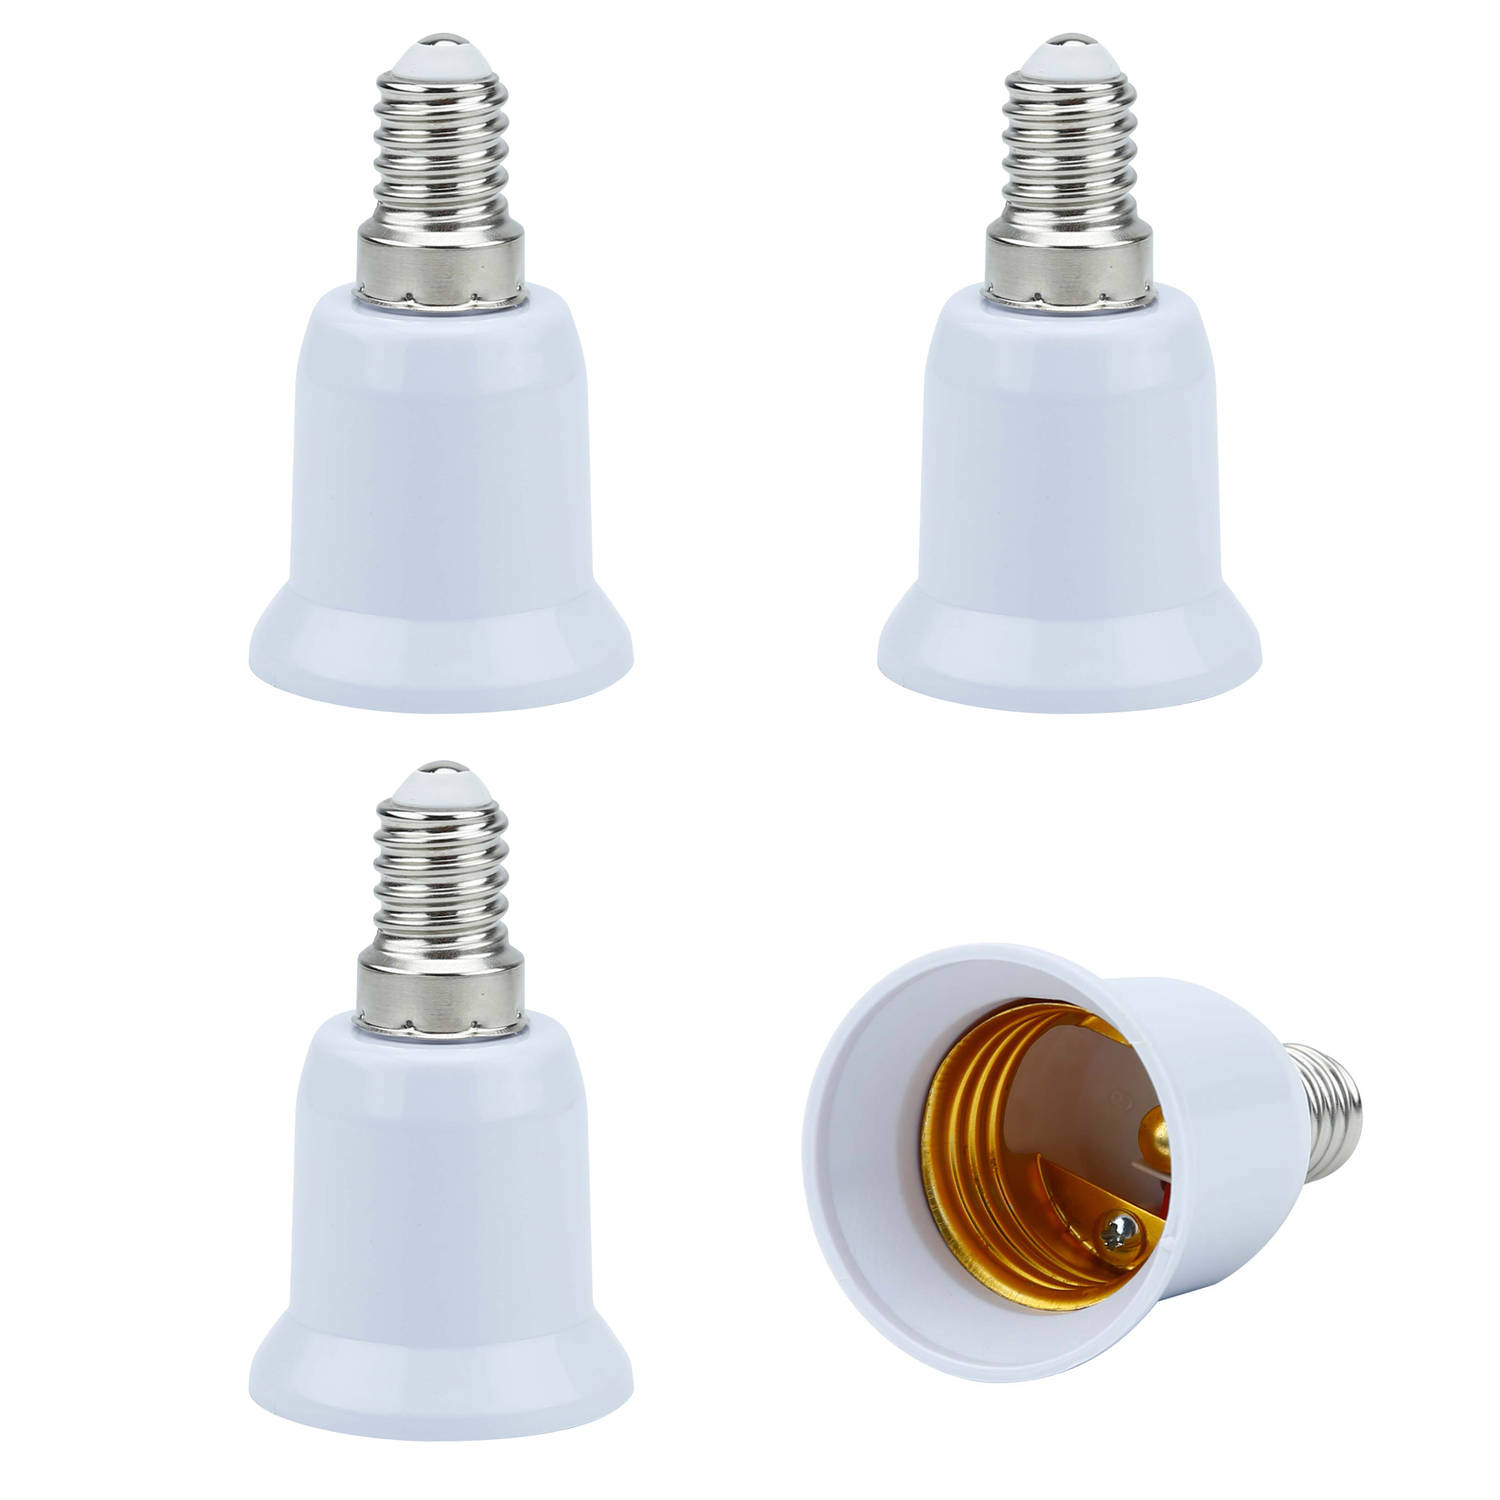 Intirilife E14 naar E27 lampvoet adapter in WIT - 4x lampadapter voor het omvormen van E14 naar E27 - set van 4 converter voor lamphouder voor gloeilampen, LED, halogeen, spaarlamp